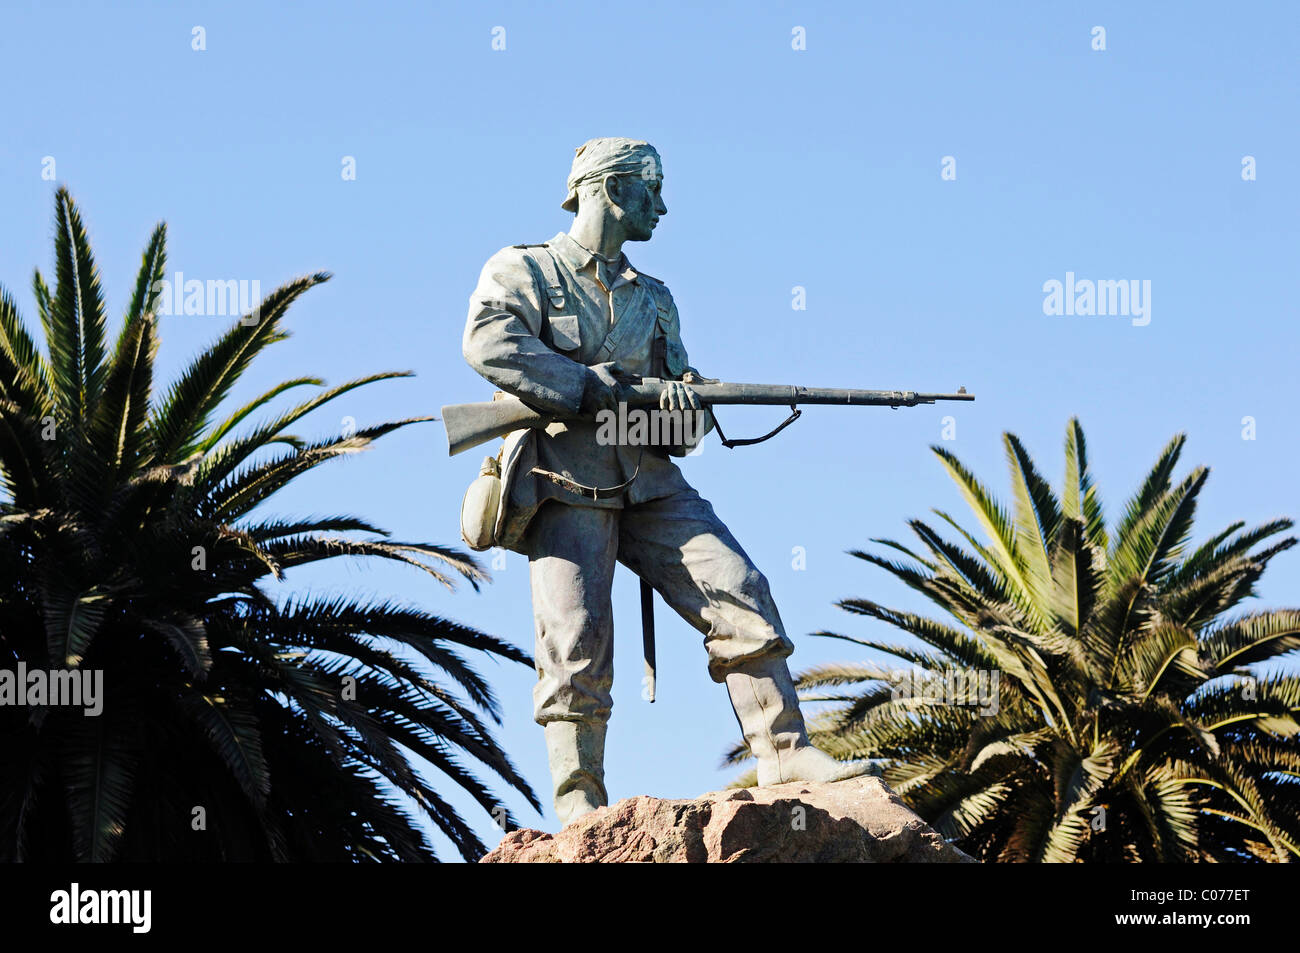 Monumento marino para conmemorar los soldados navales en la lucha contra los Herero y Nama, Swakopmund, región Erongo, Namibia Foto de stock